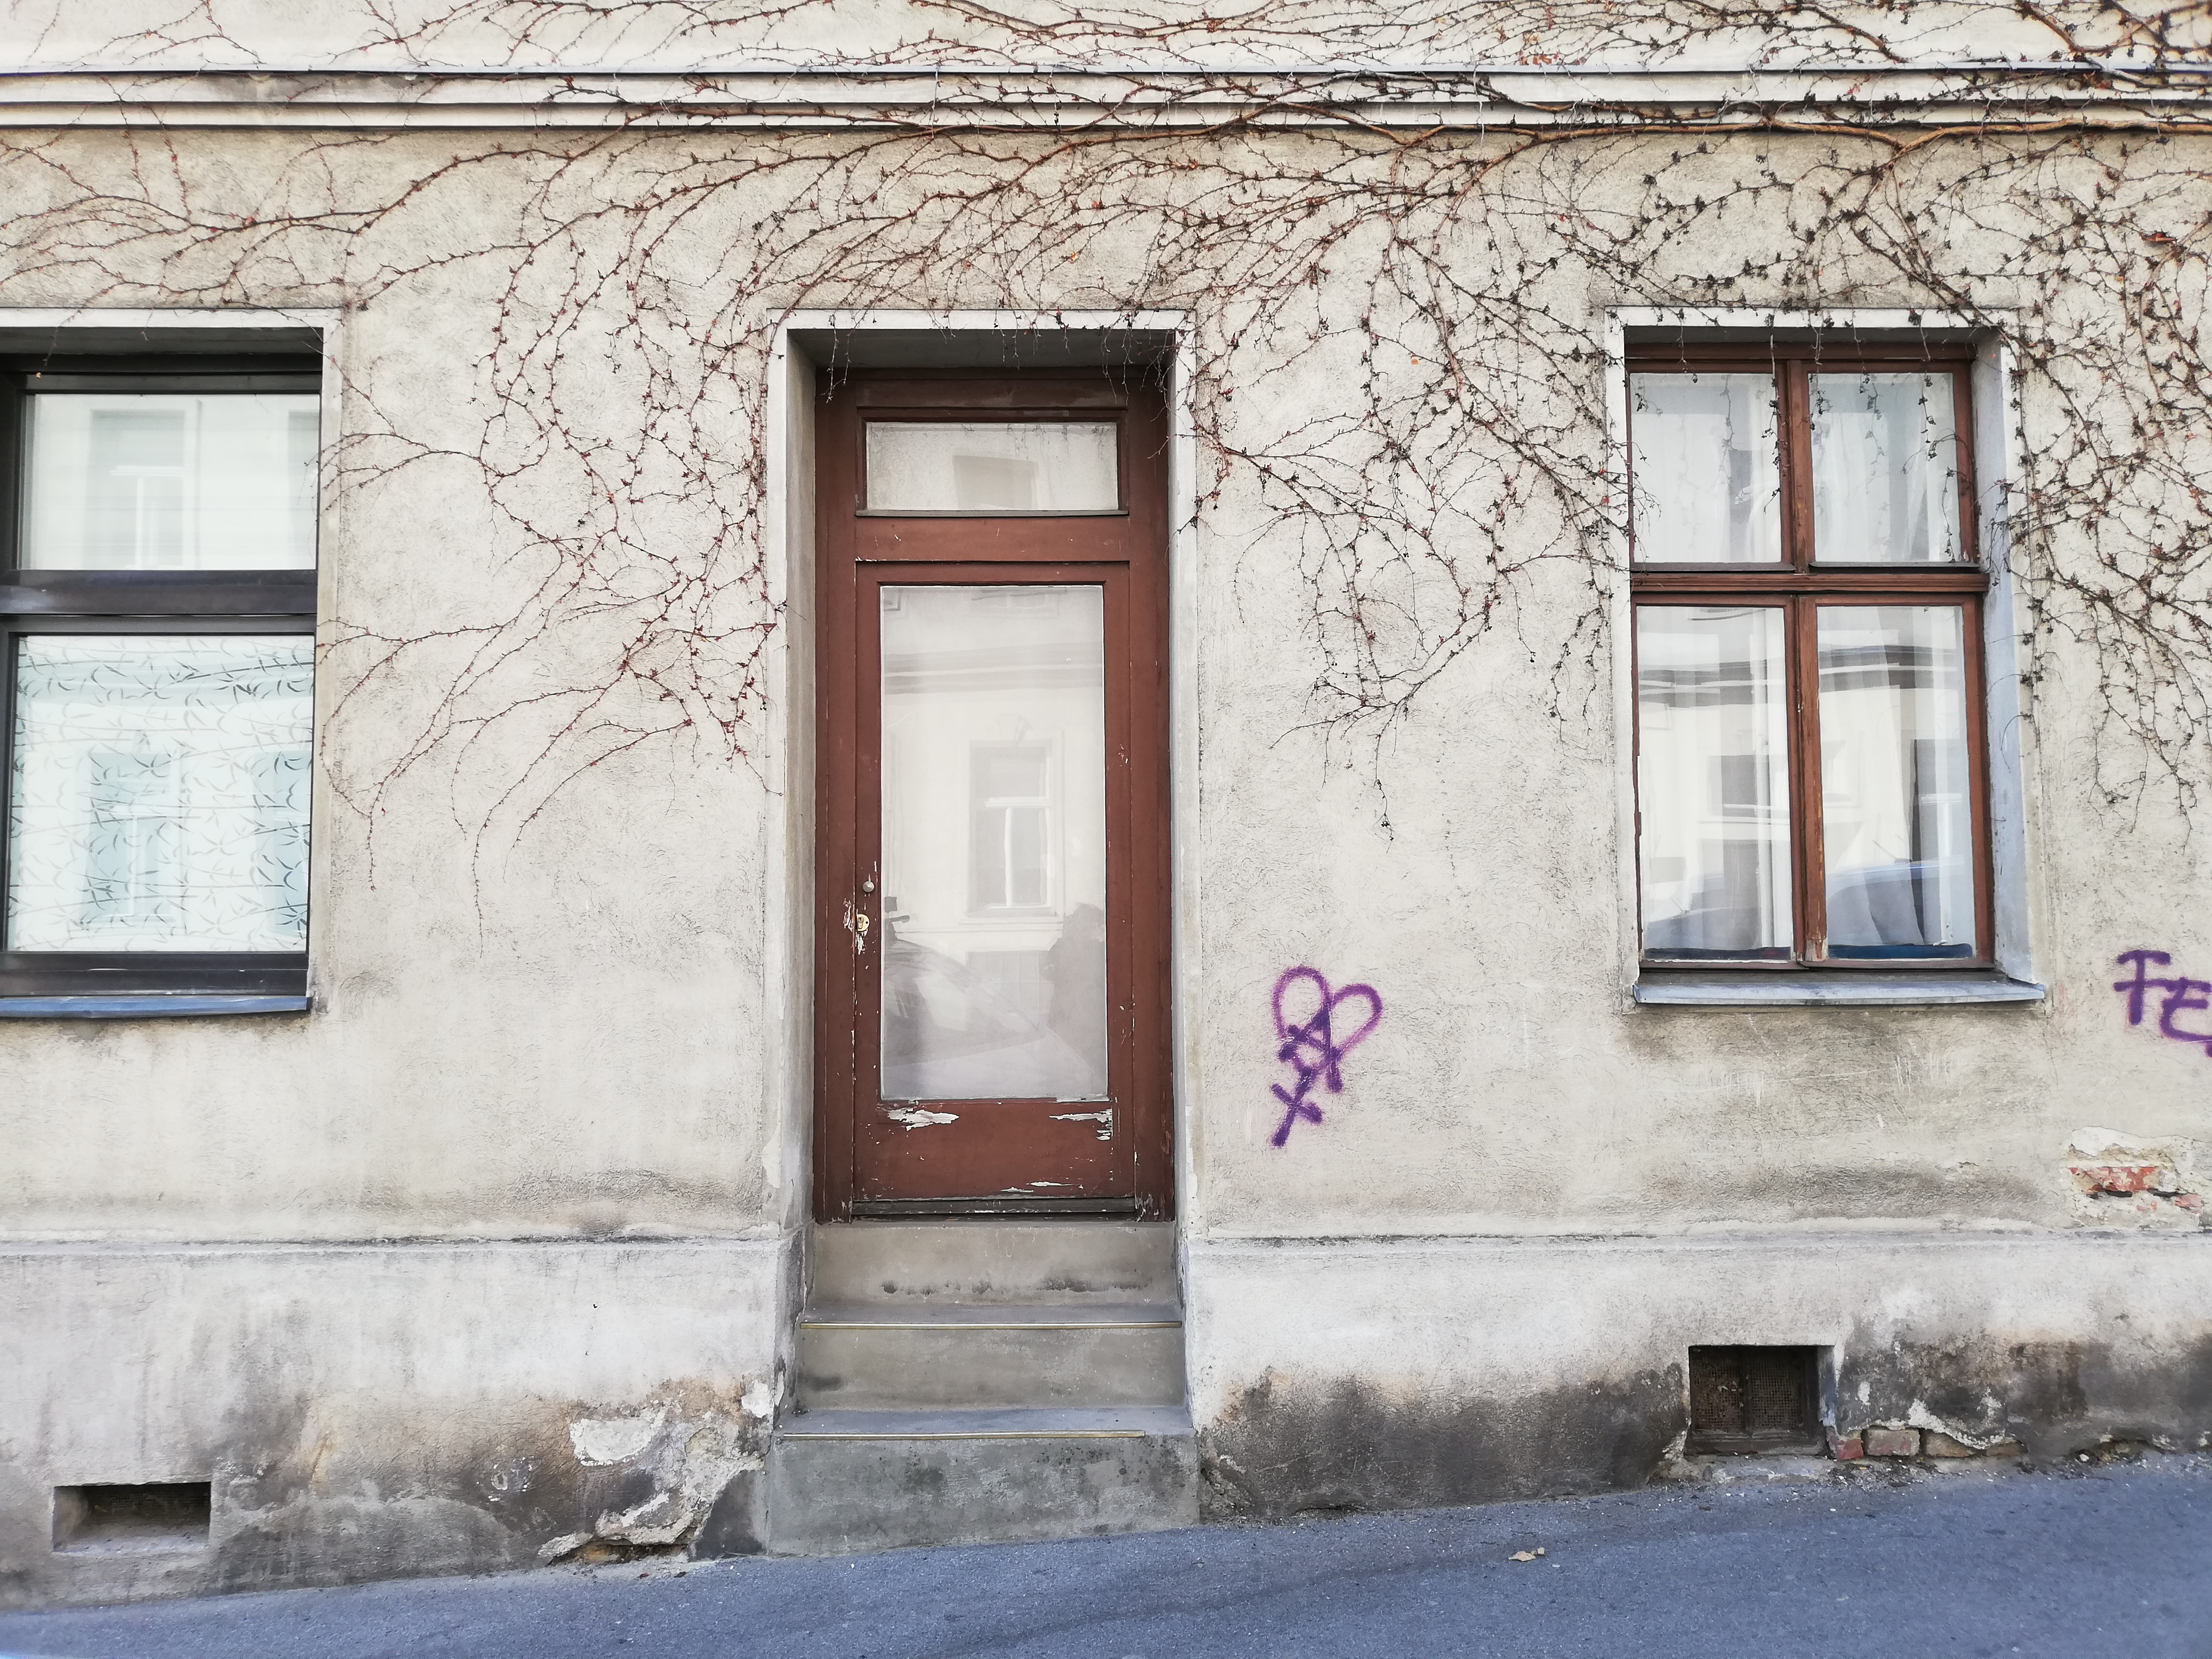 Leerstand in Wien - Foot zeigt eine leerstehende Wohnung, die bewusst dem Markt entzogen wurde um den Preis in die Höhe zu treiben.